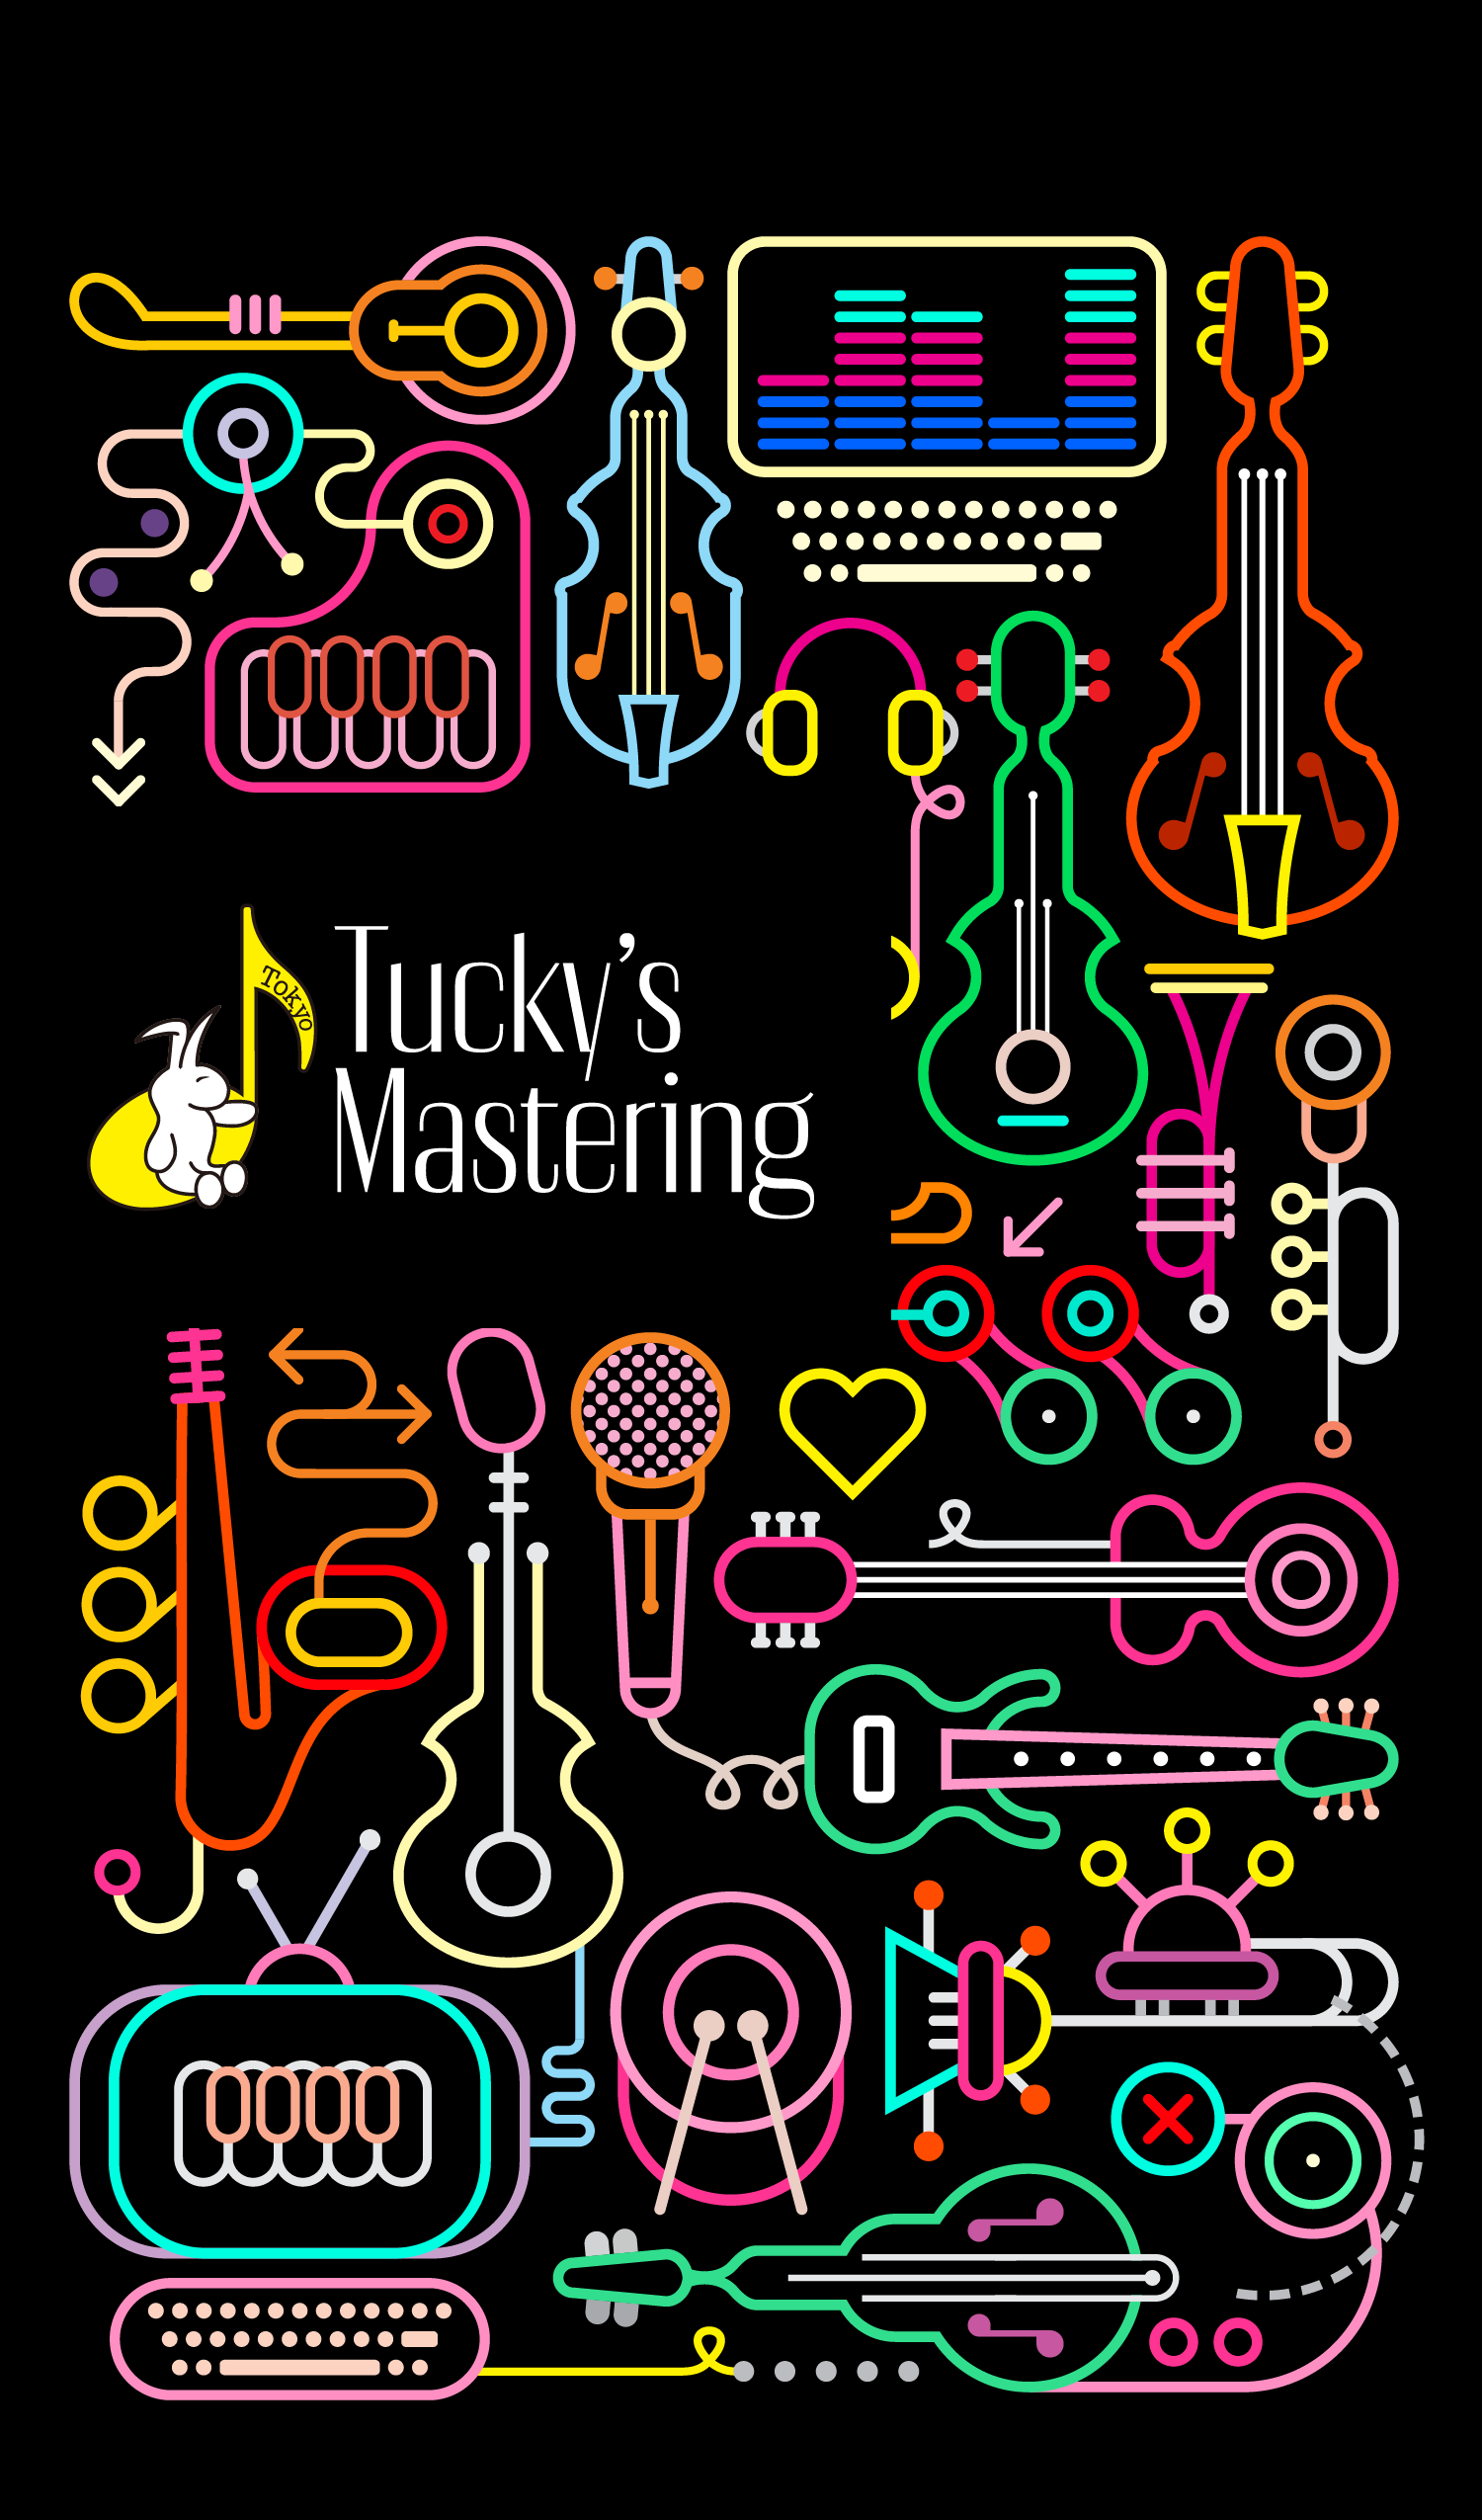 Tucky's Mastering